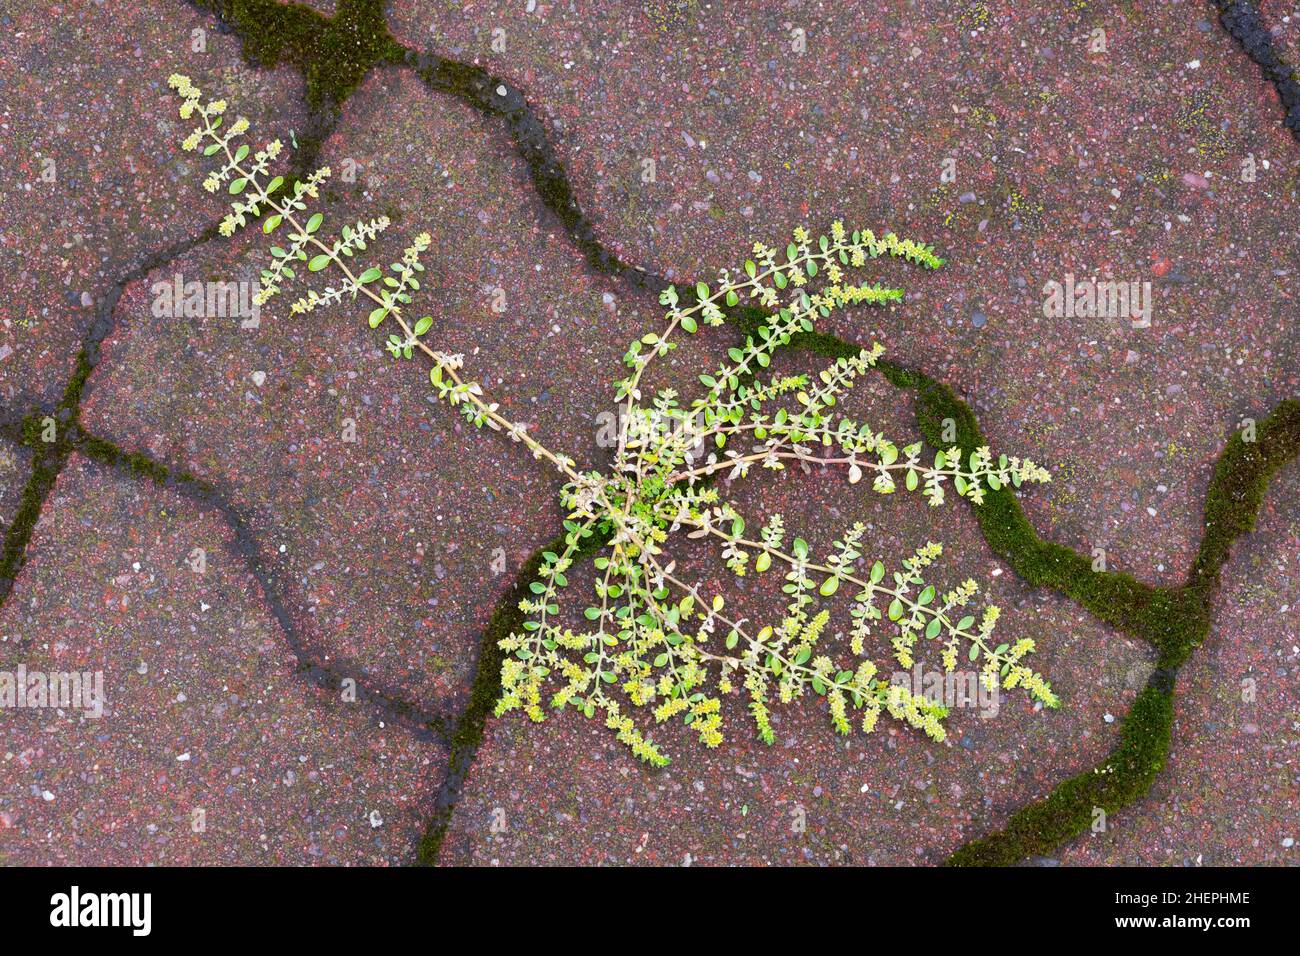 Glatte Rupturewürze, glatte Burstwürze (Herniaria glabra), wächst auf einem Pflaster, Deutschland Stockfoto